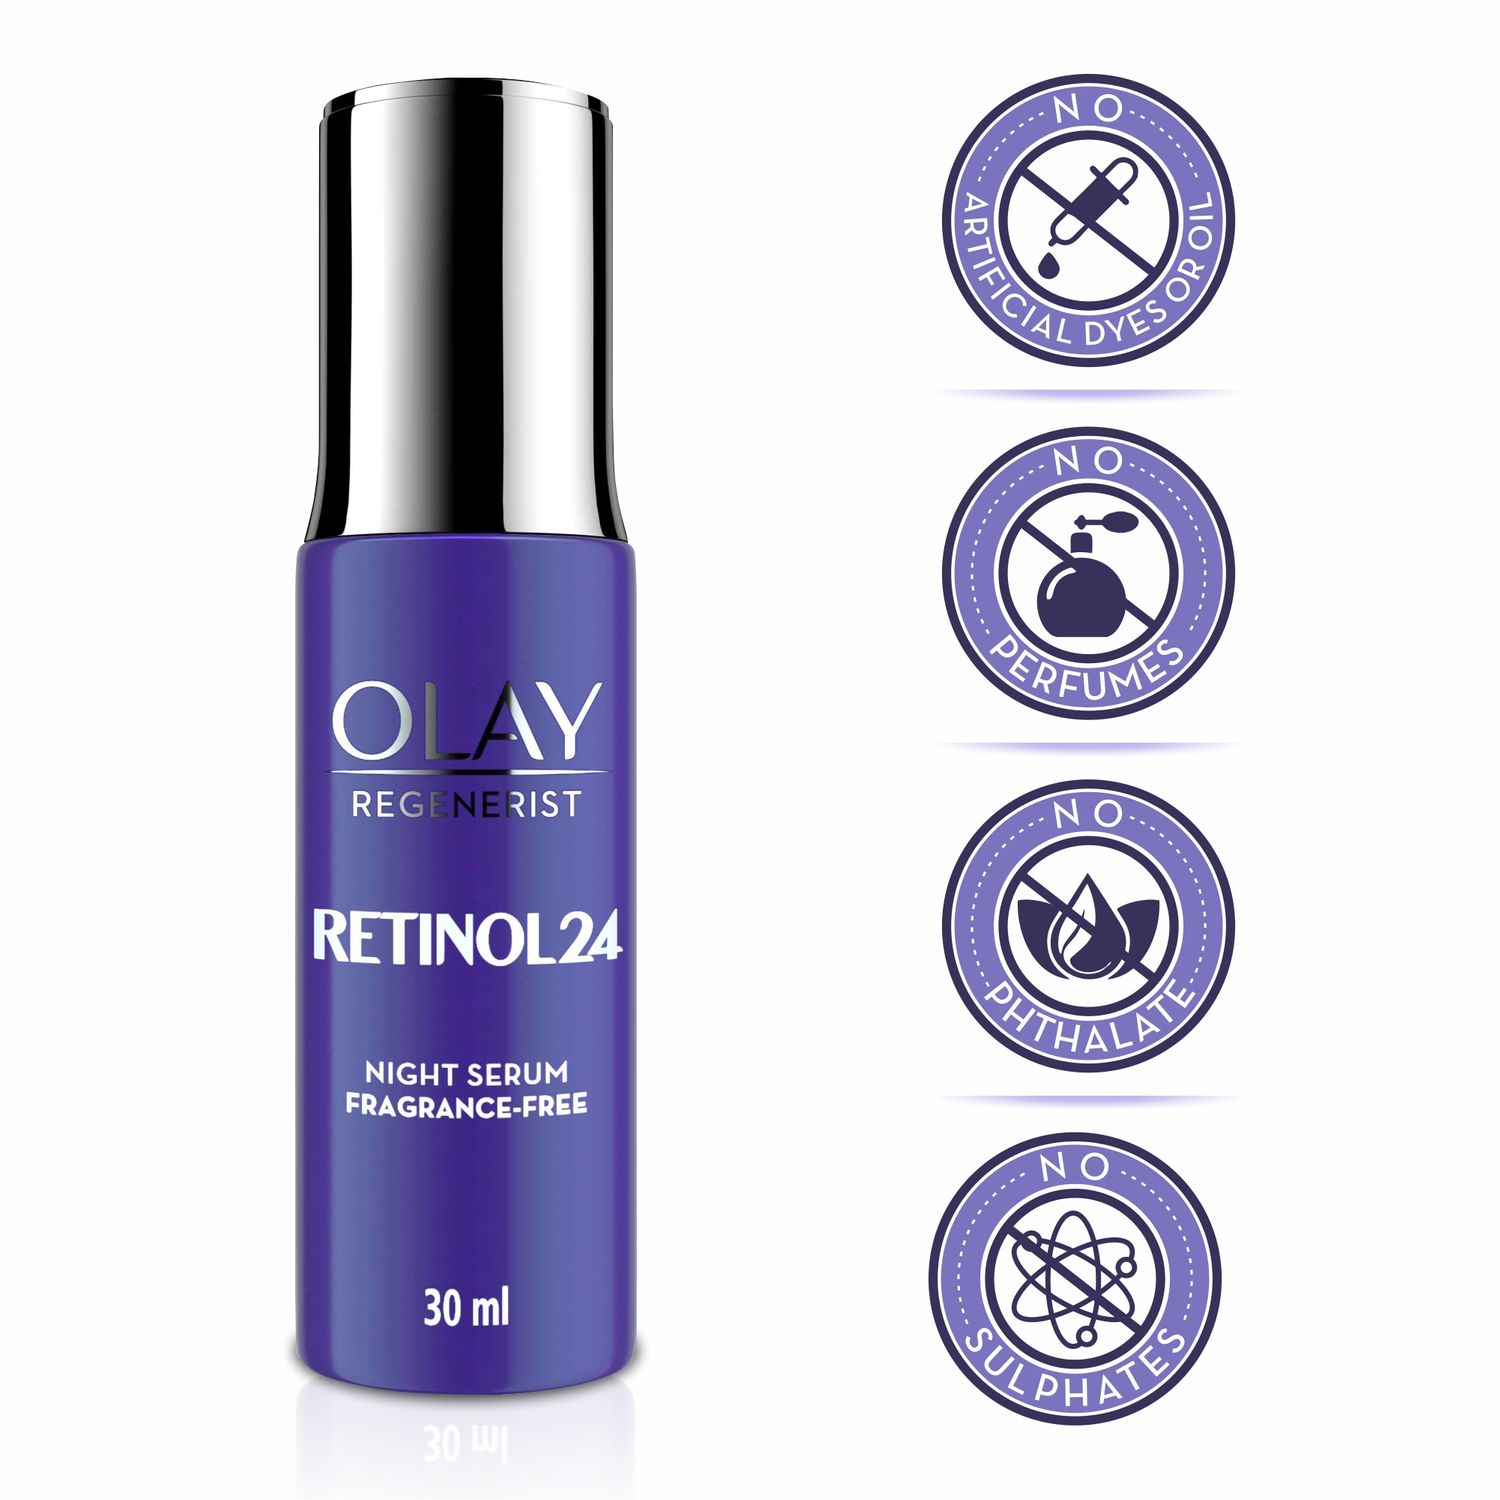 Olay Regenerist Micro-Sculpting Cream 50g and Retinol 24 Night Serum 30ml - Round The Clock Skincare Diwali Gift Pack